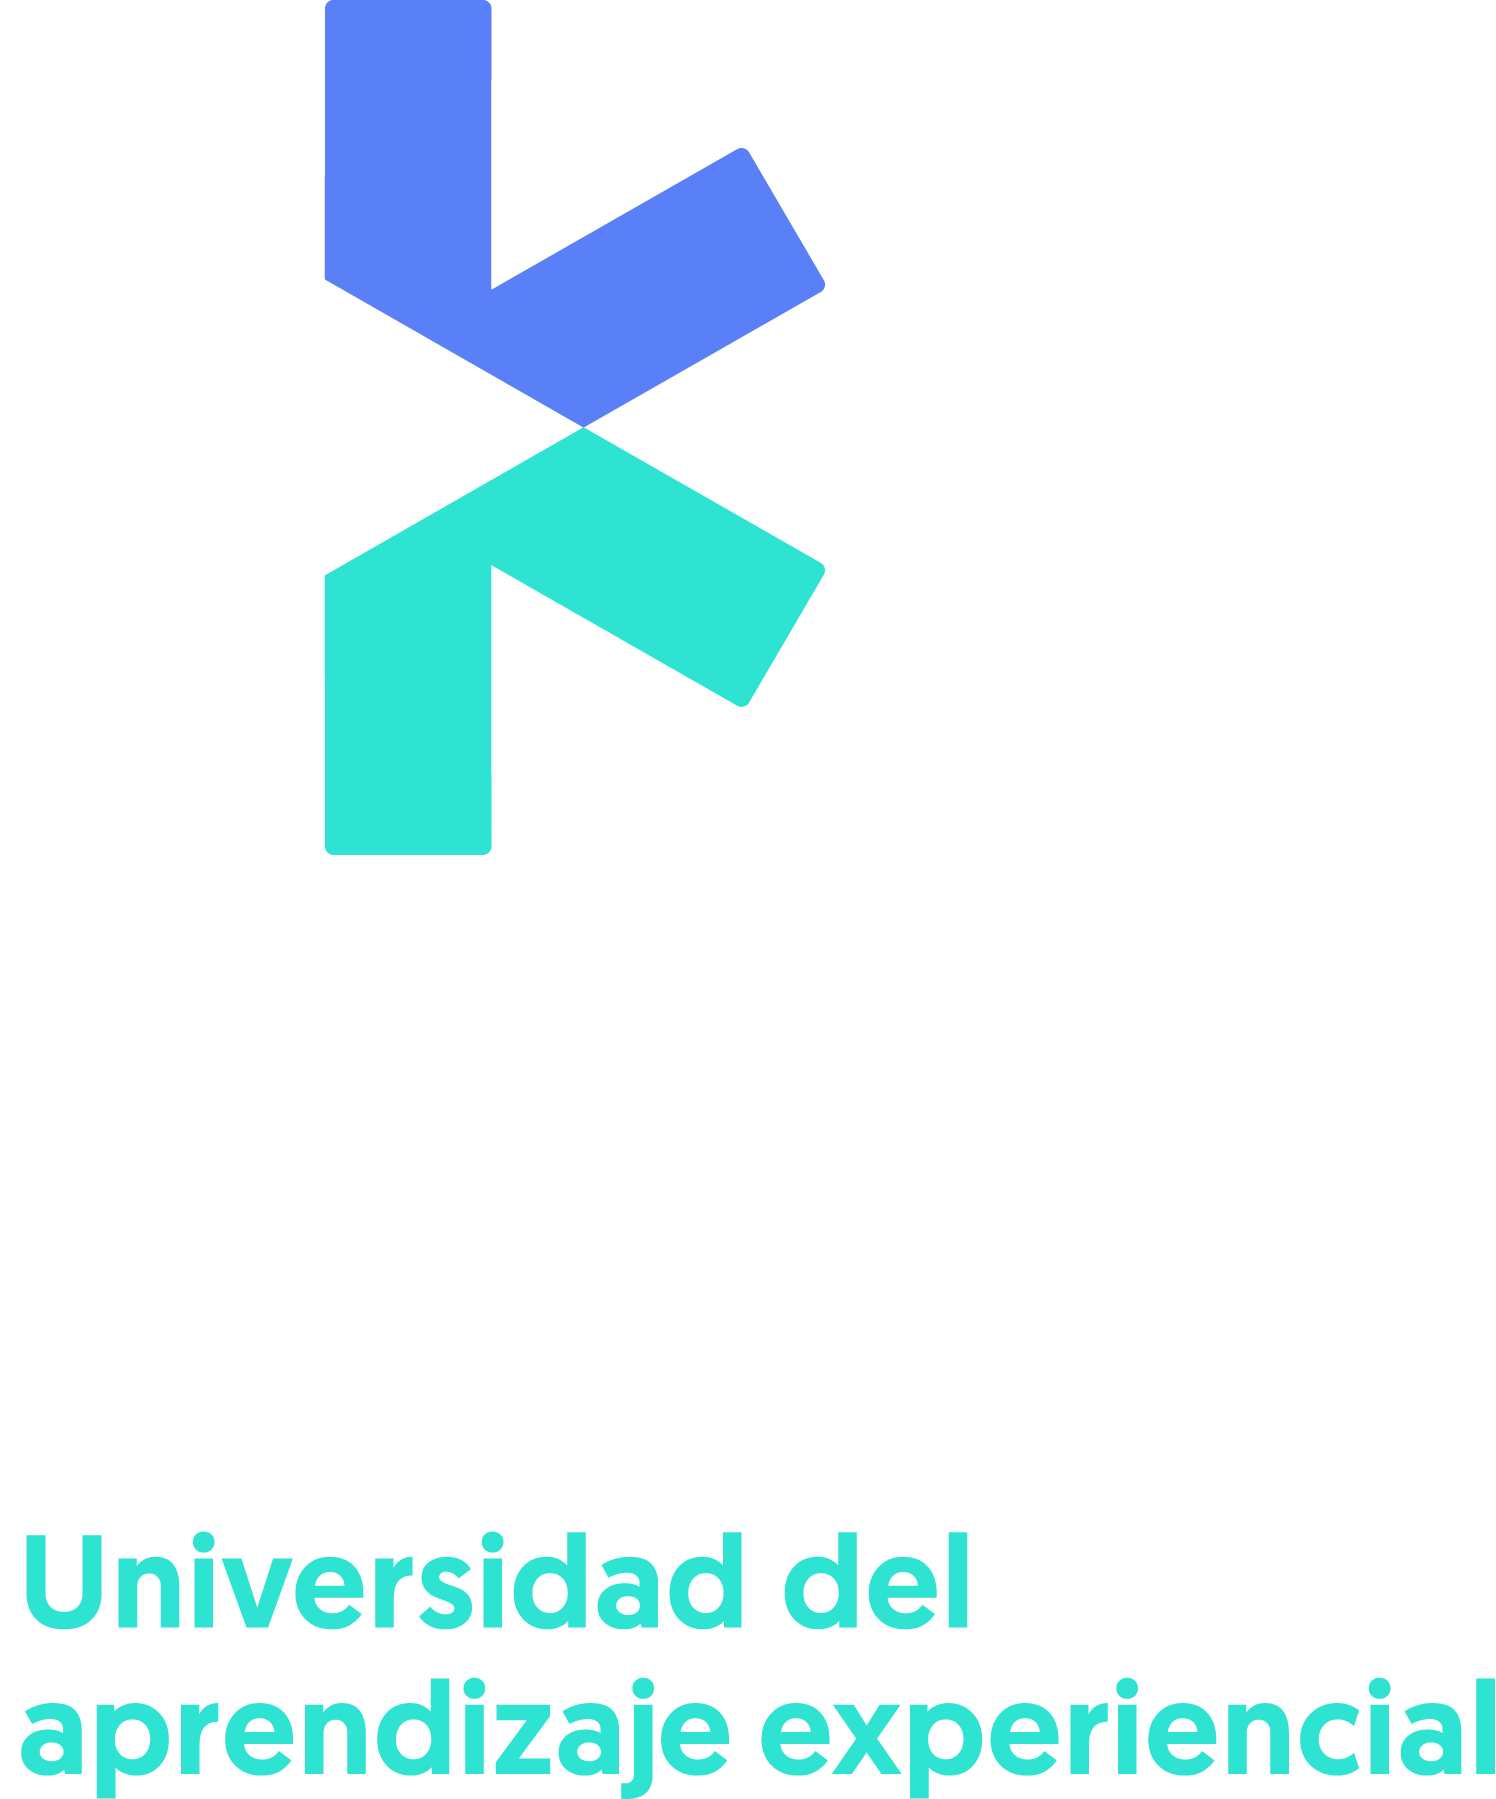 Universidad UDAX (Universidad del Aprendizaje Experiencial)